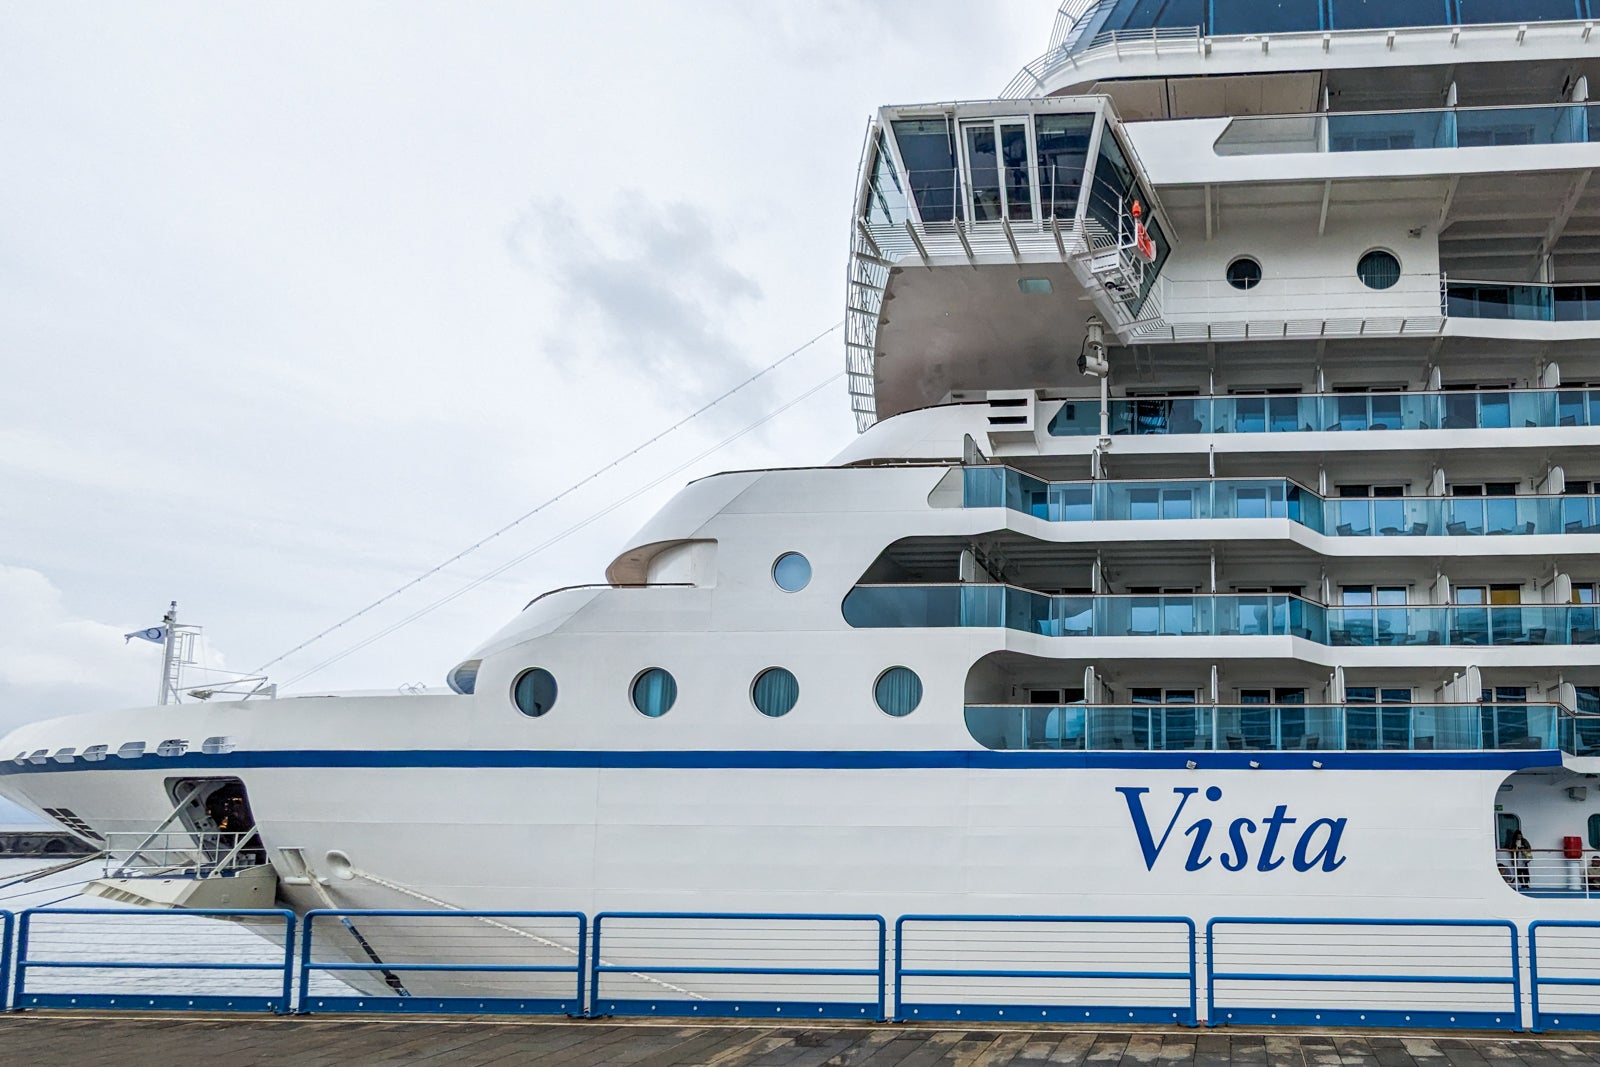 Oceania's Vista cruise ship